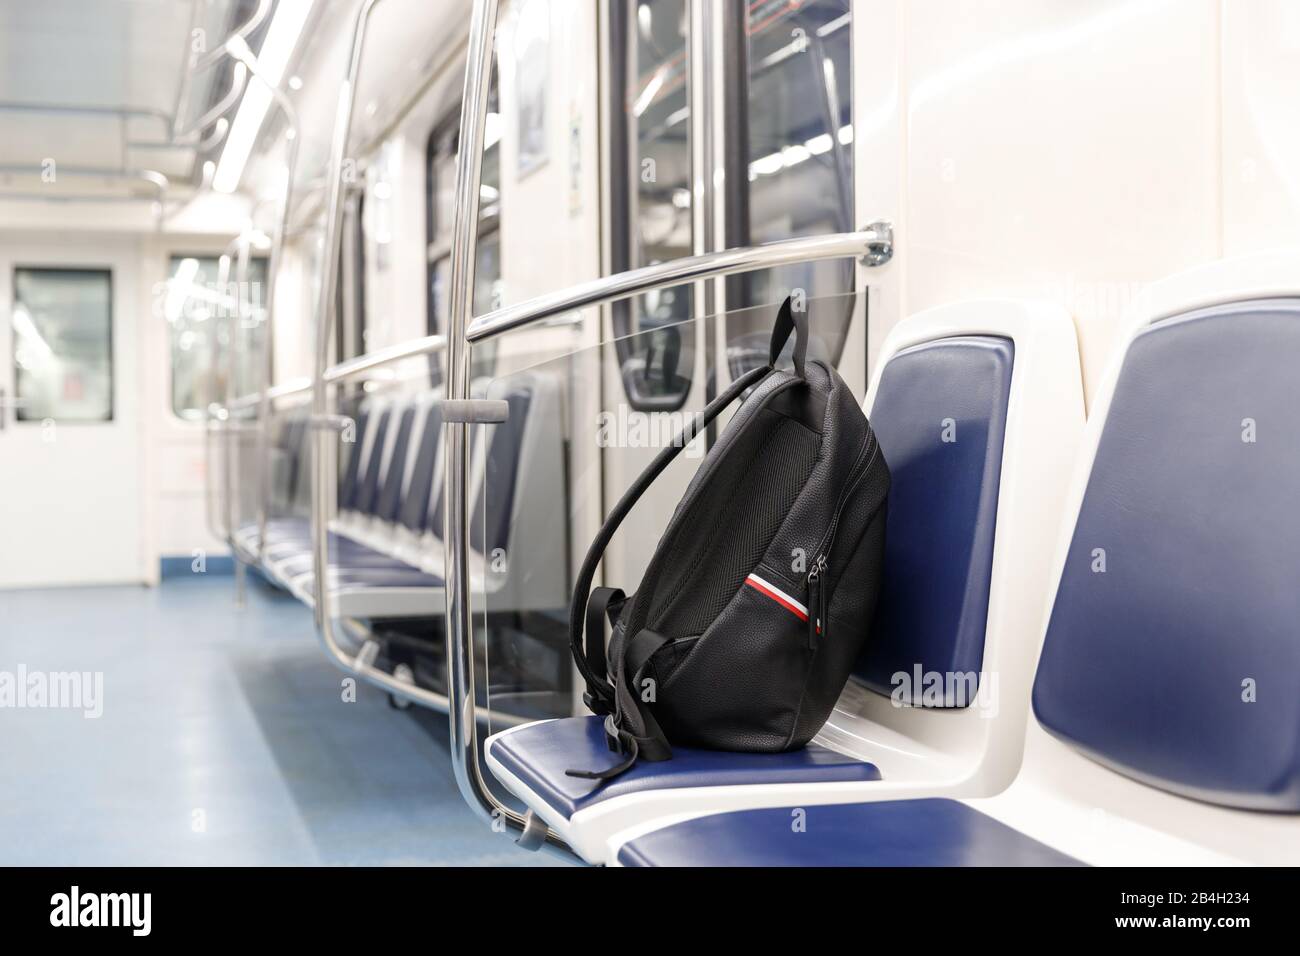 Vergessene schwarze Lederrucksack/Tasche oder Bombe für einen Terroranschlag liegt auf einem Sitz im U-Bahn-Zug, den öffentlichen Verkehrsmitteln. Terrorgefahr. Stockfoto